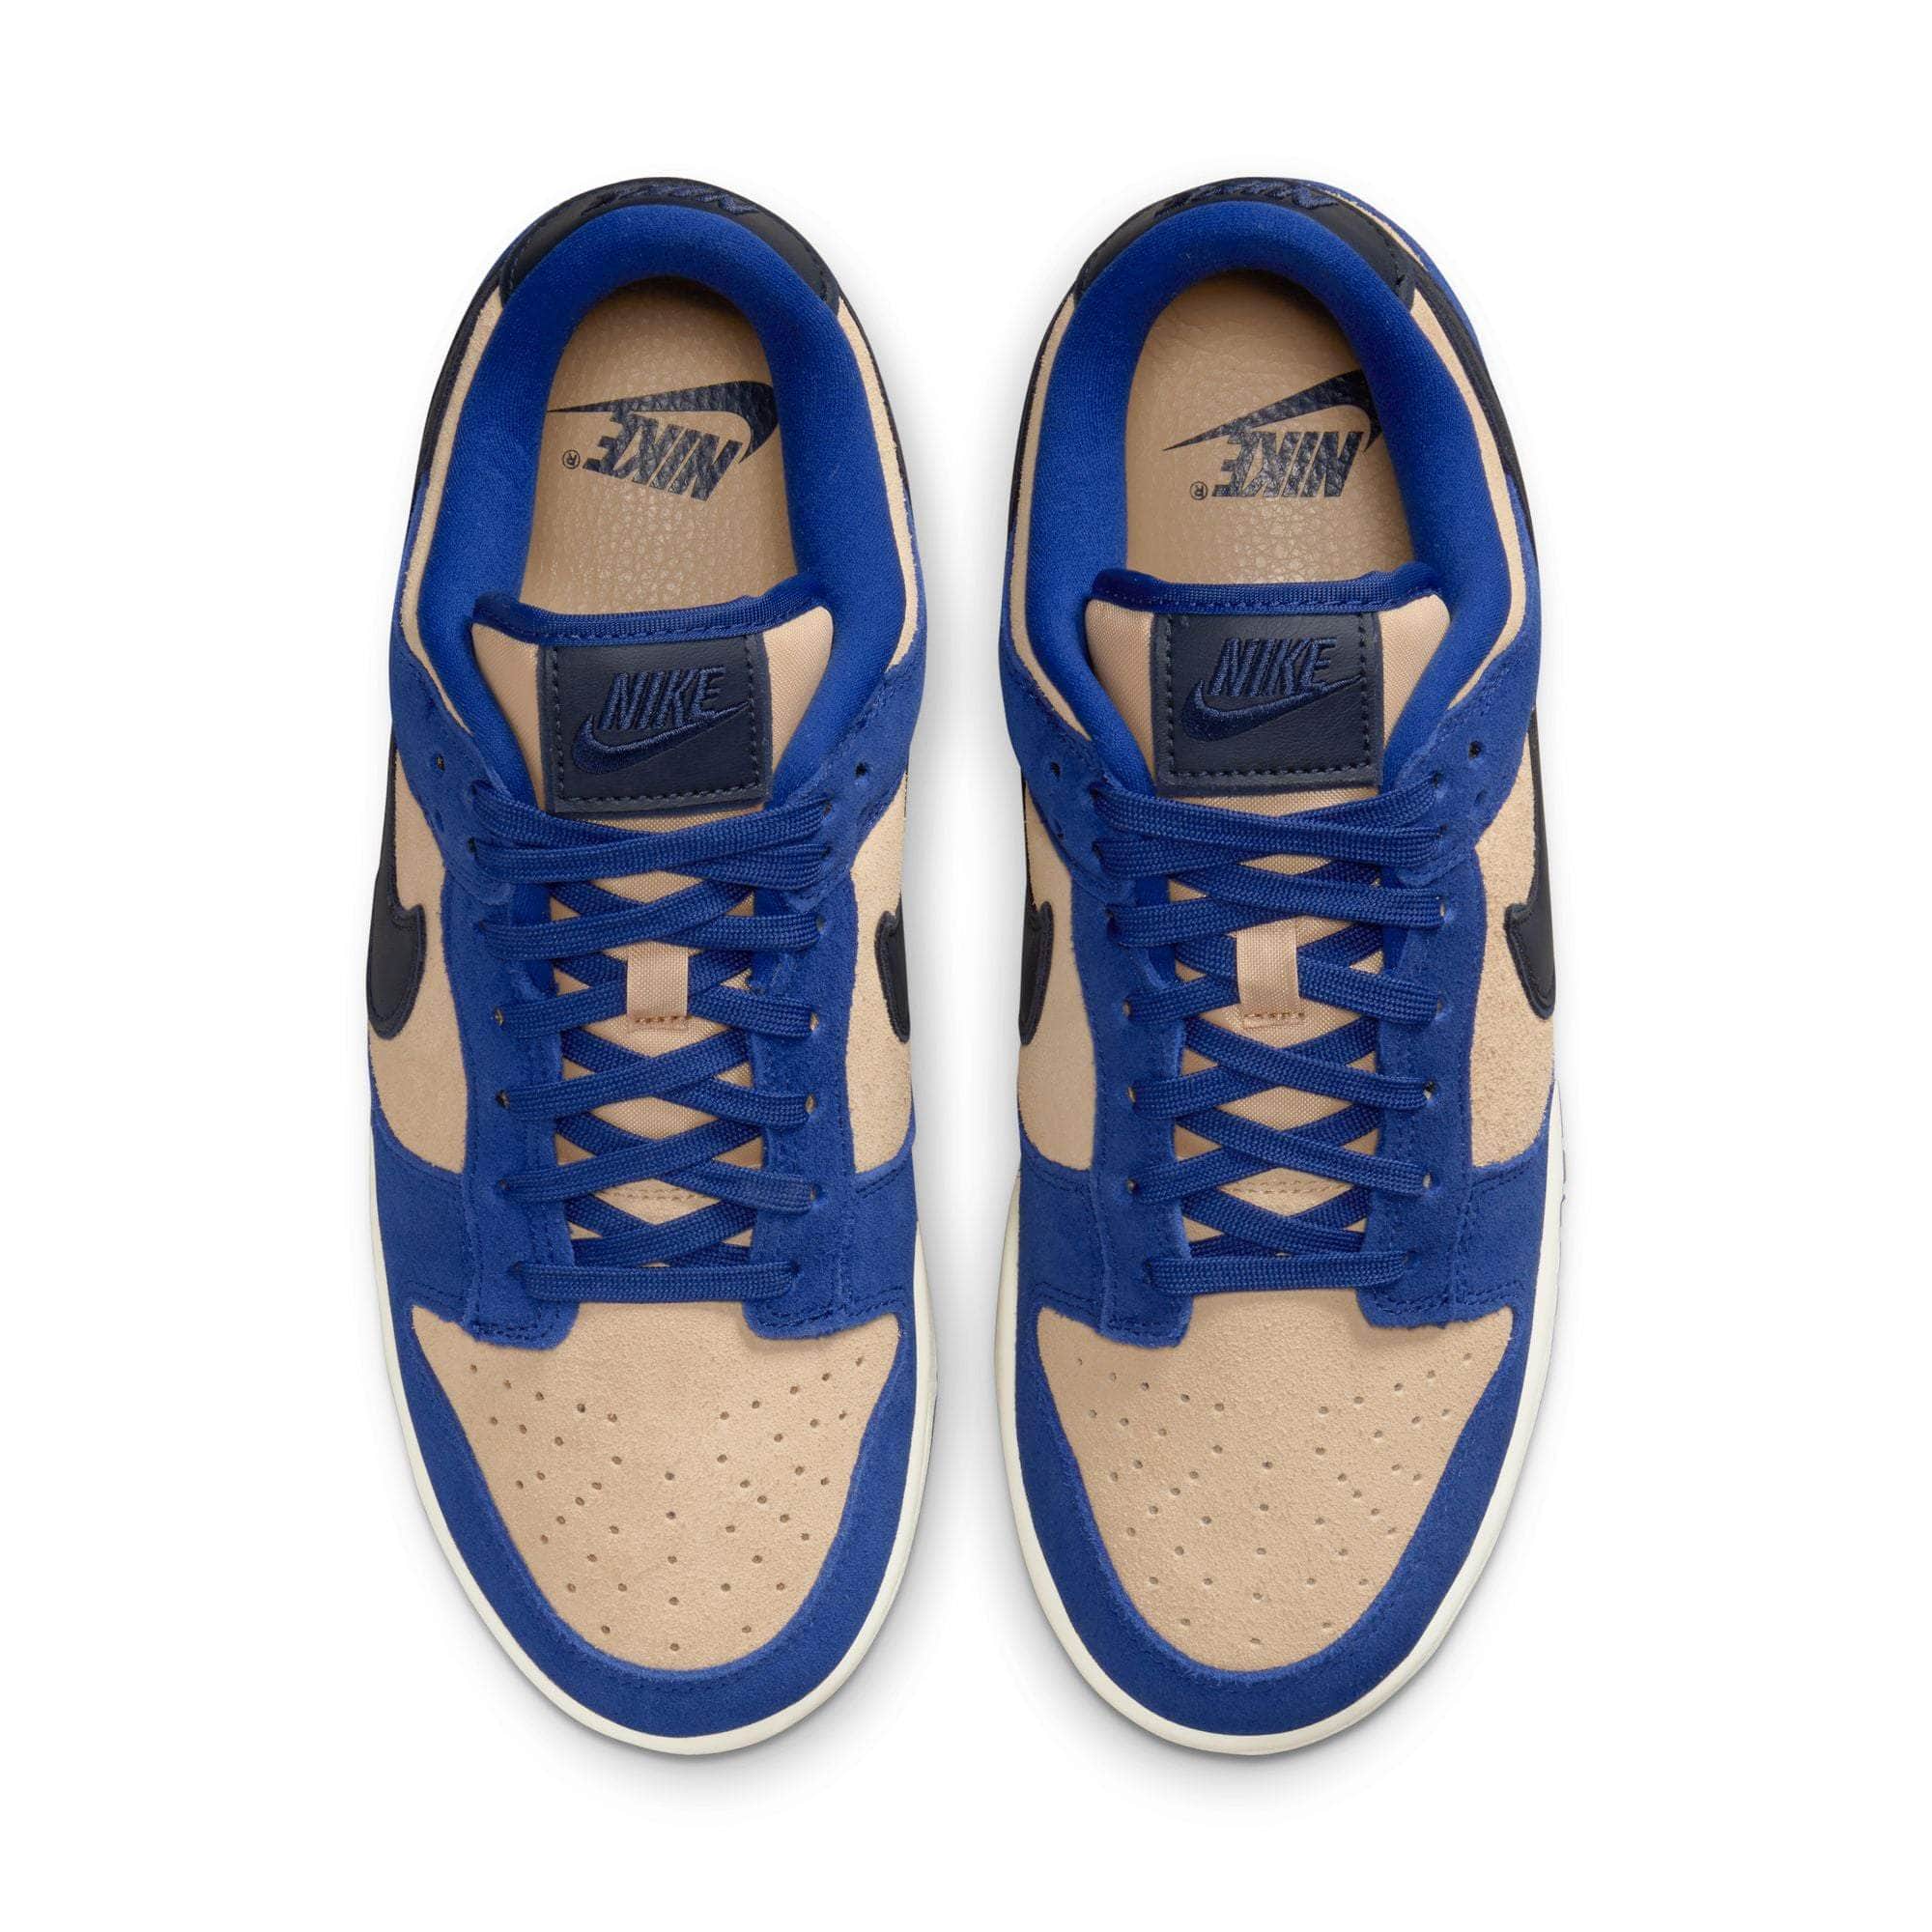 NIKE FOOTWEAR Nike Dunk Low LX "Blue Suede" - Women's